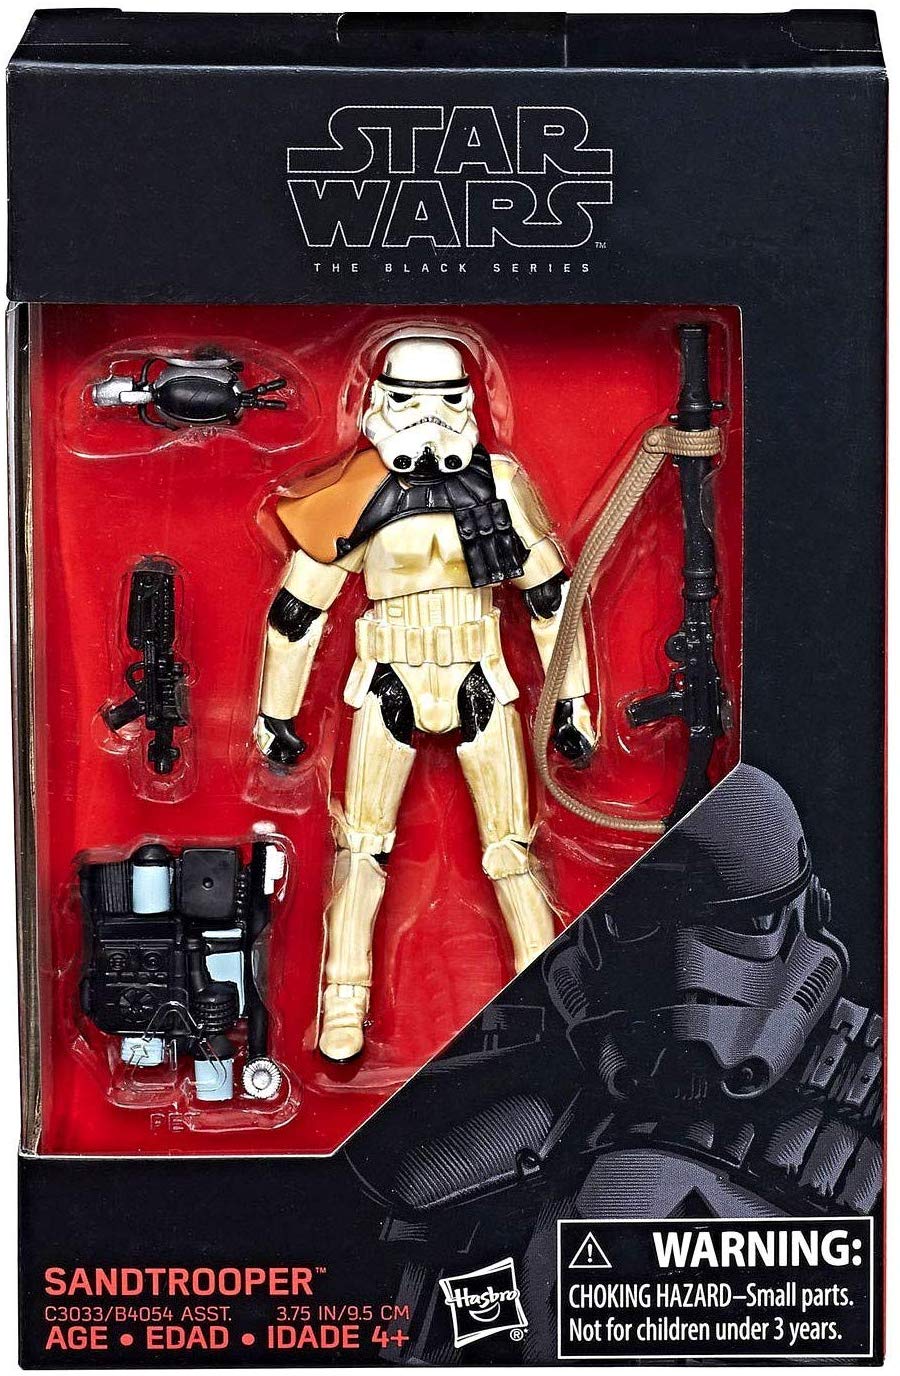 Star Wars The Black Series Sandtrooper Walmart Exclusive 3.75 in Action Figure 1